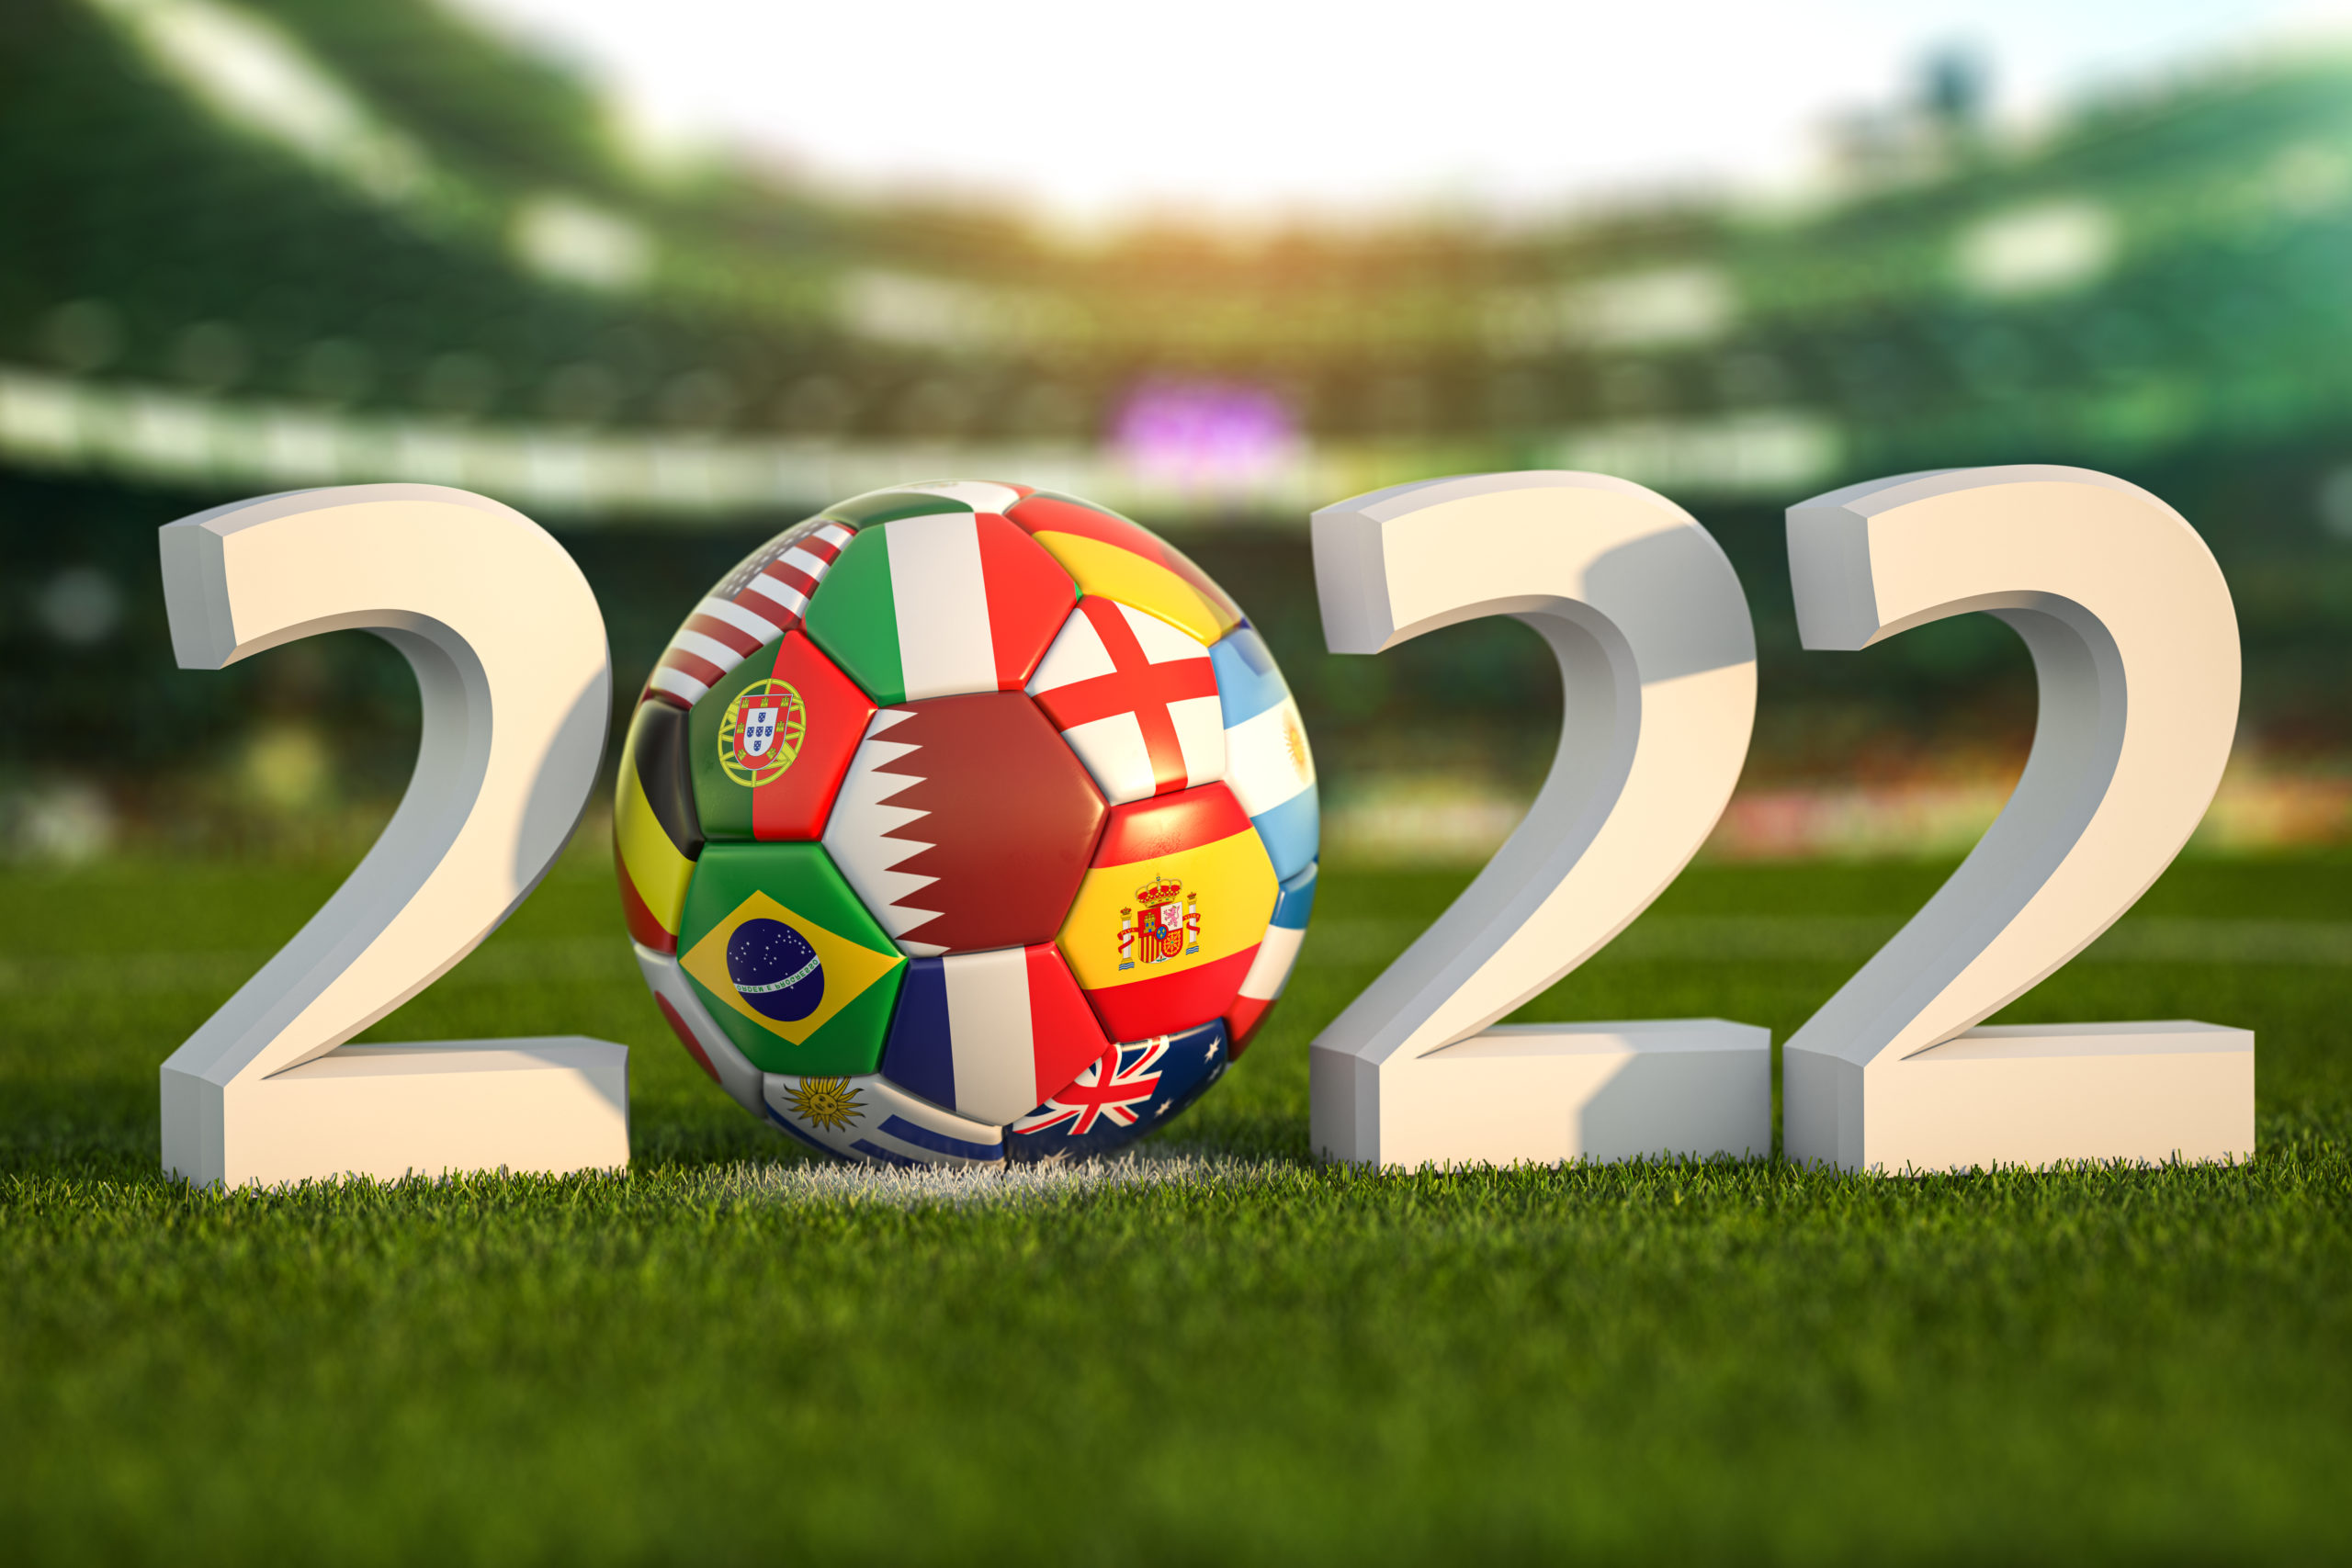 Ano de 2022 no campo de um estádio com uma bola estampada com a bandeira de algumas seleções participantes da Copa do Mundo de 2022 no Catar como Brasil, Argentina e Espanha.